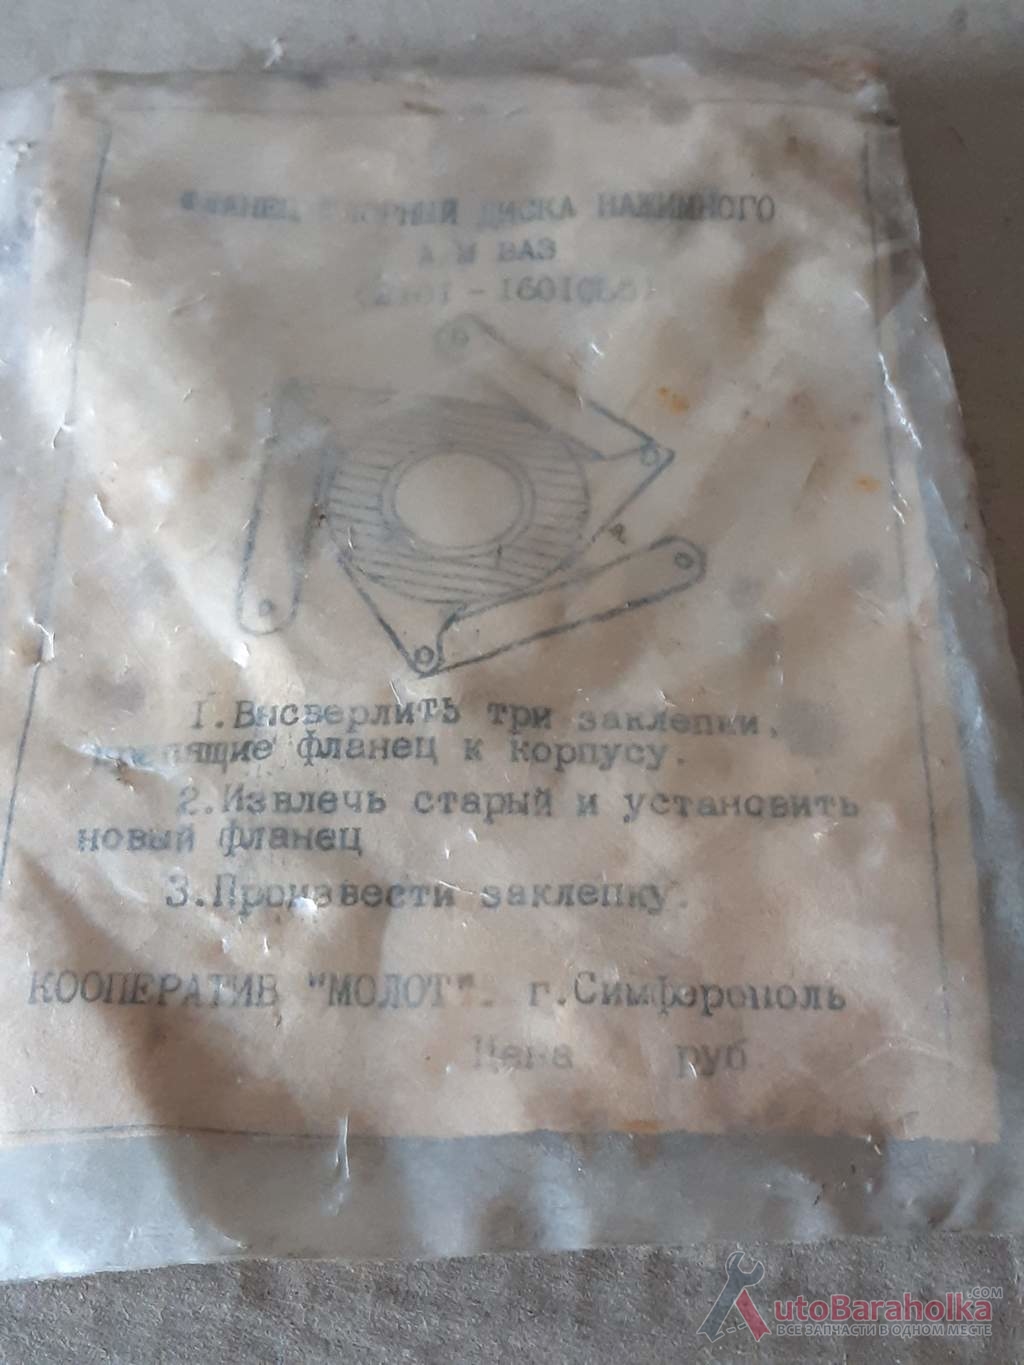 Продам Ремкомплект корзины сцепления ВАЗ-2101-07, пятак выжимного подшипника Днепропетровск